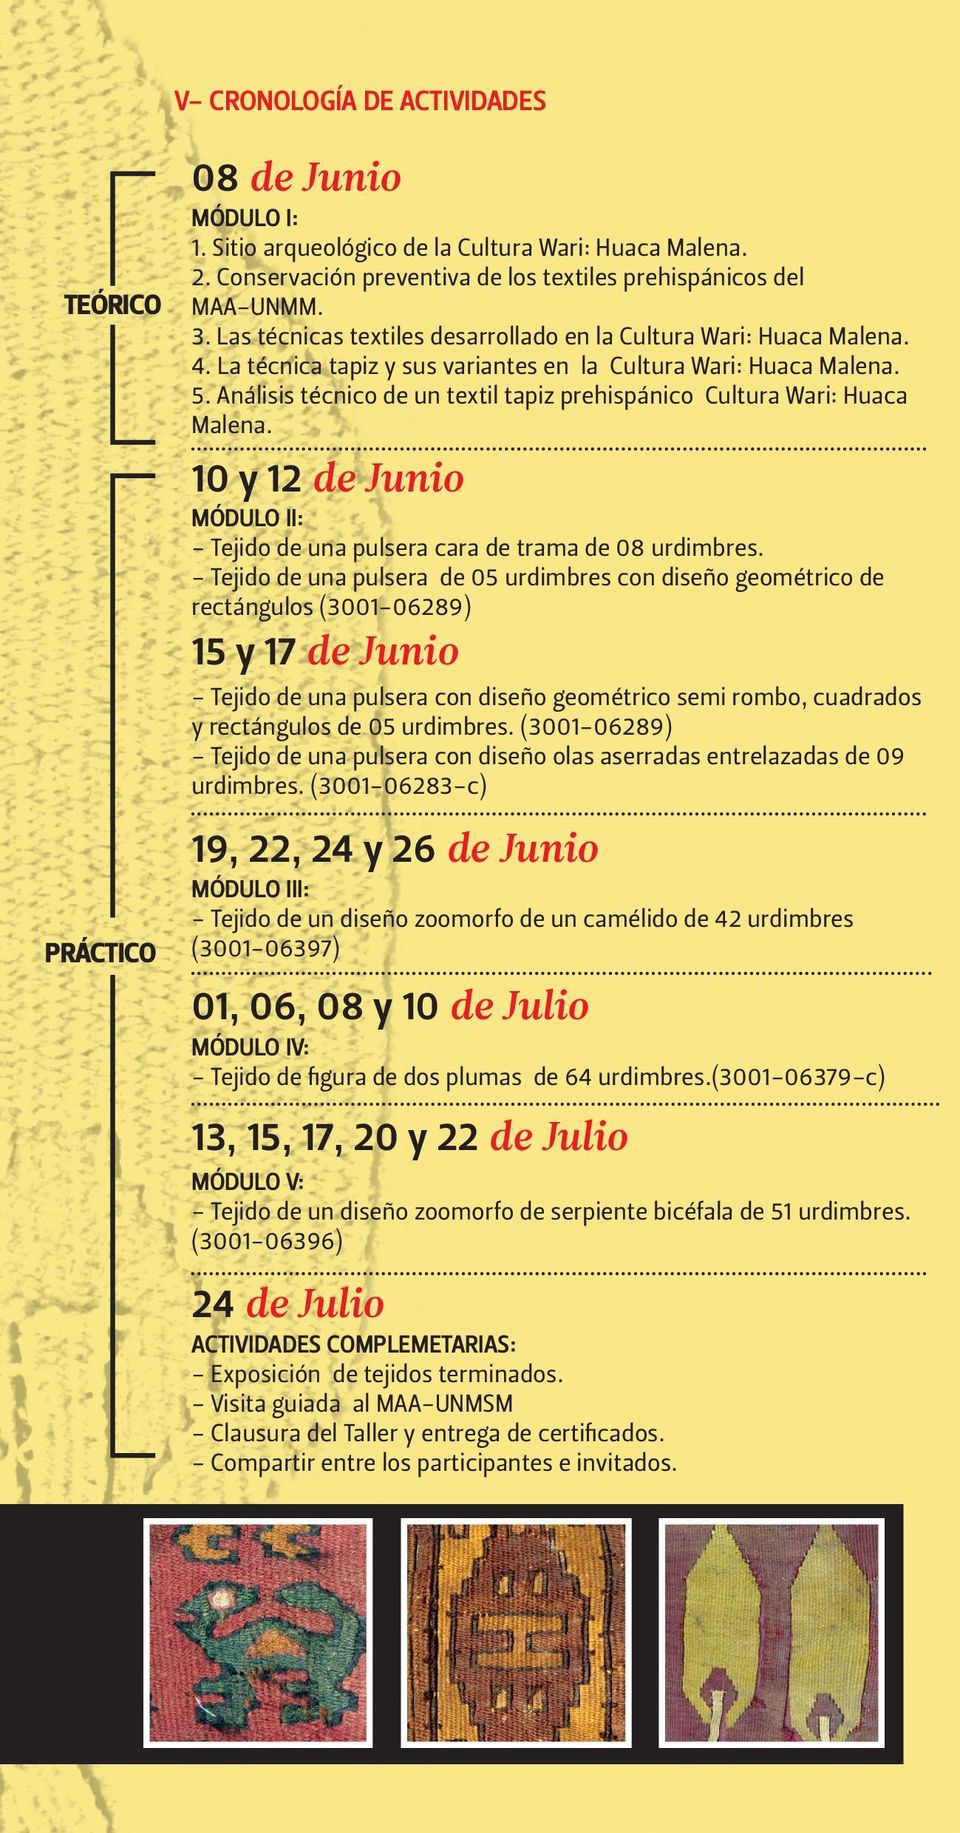 Análisis técnico de un textil tapiz prehispánico Cultura Wari: Huaca Malena. 10 y 12 de Junio MÓDULO II: - Tejido de una pulsera cara de trama de 08 urdimbres.